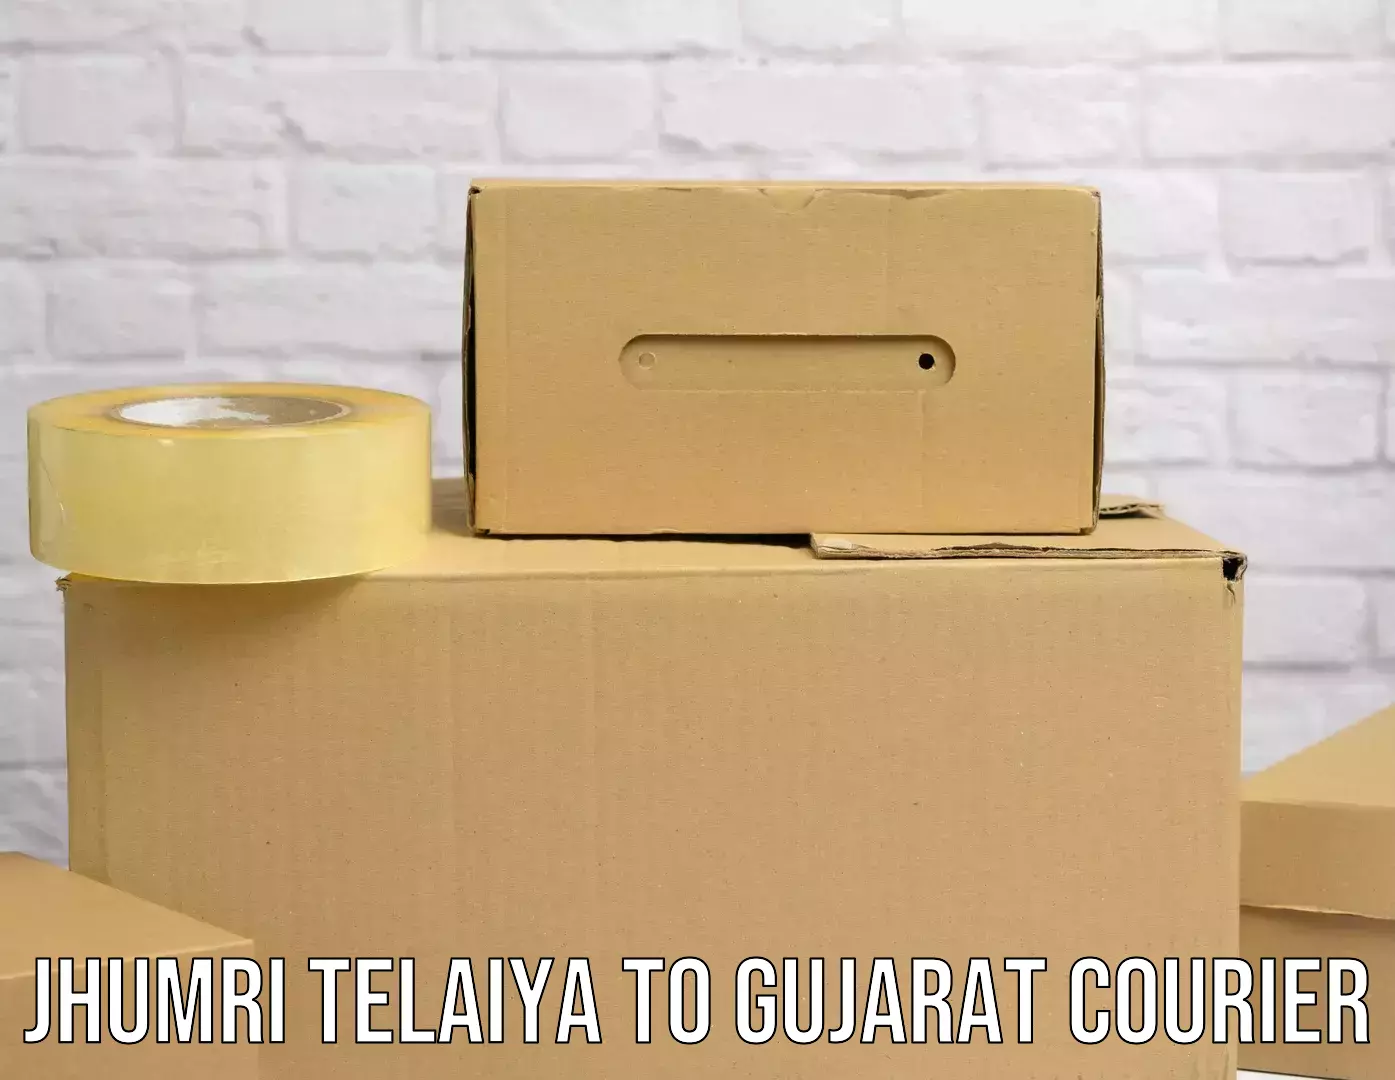 Express courier facilities Jhumri Telaiya to Gujarat